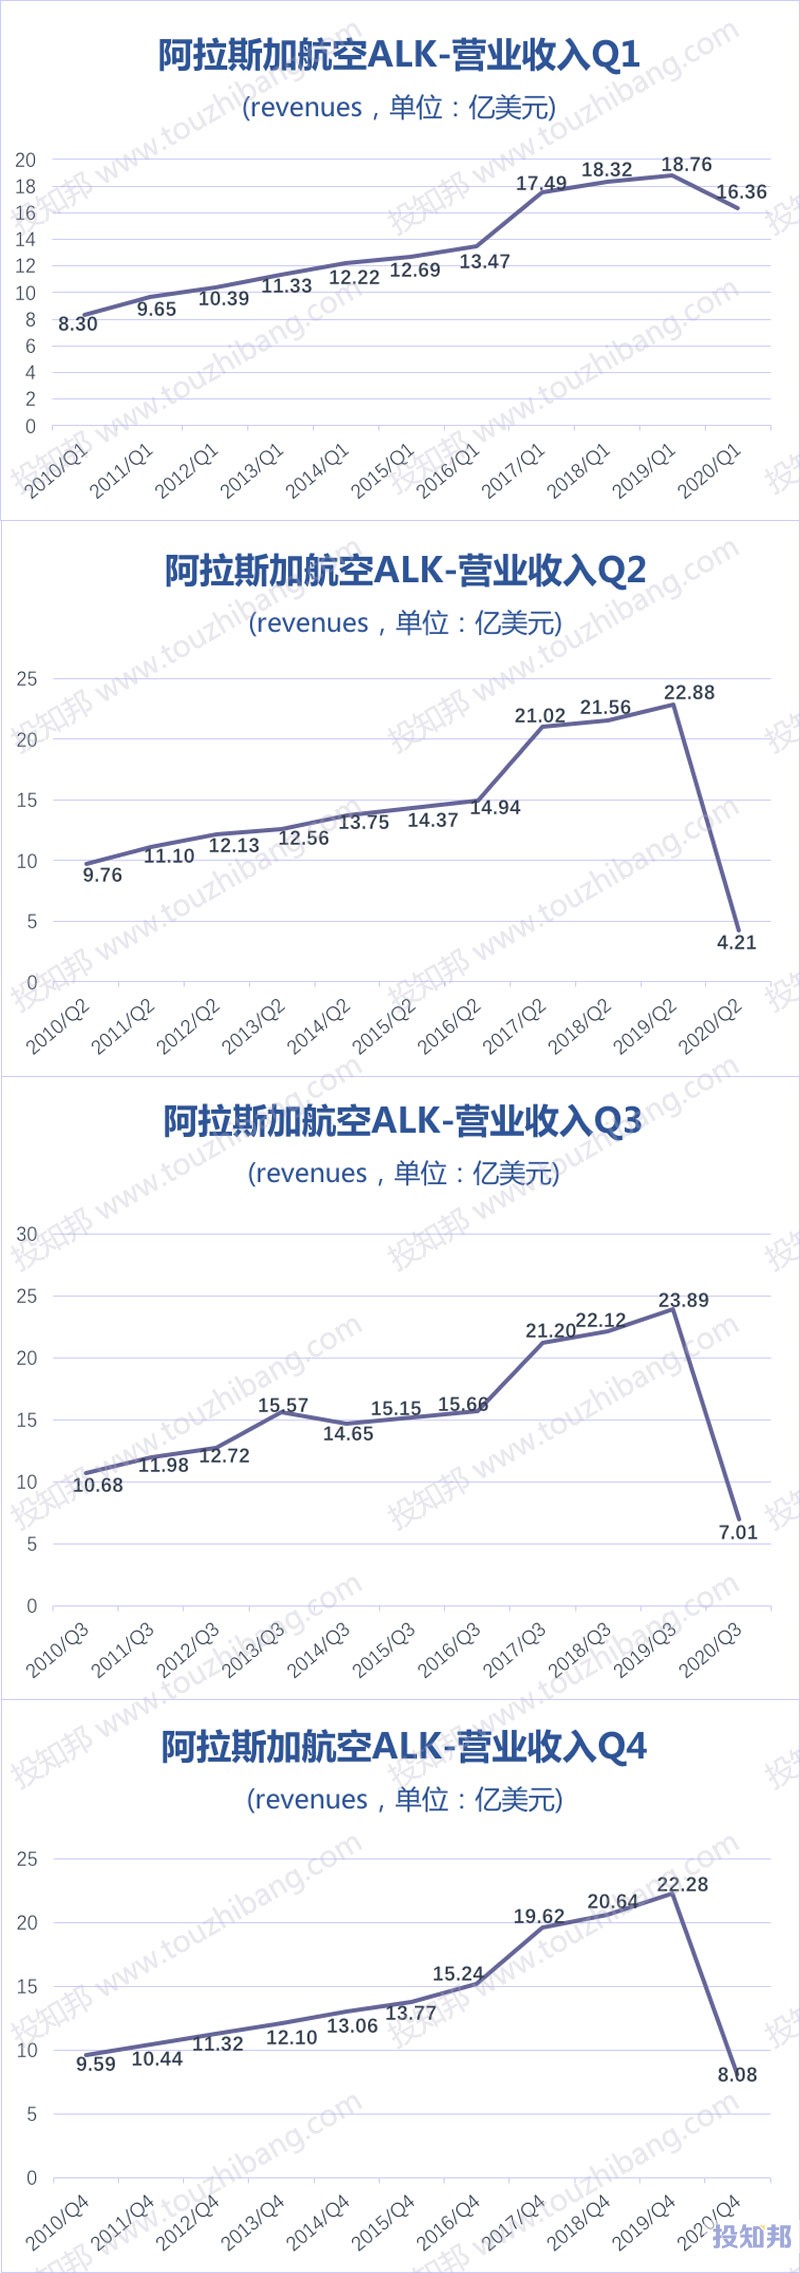 阿拉斯加航空(ALK)核心财报数据图示(2010年~2020年，更新)